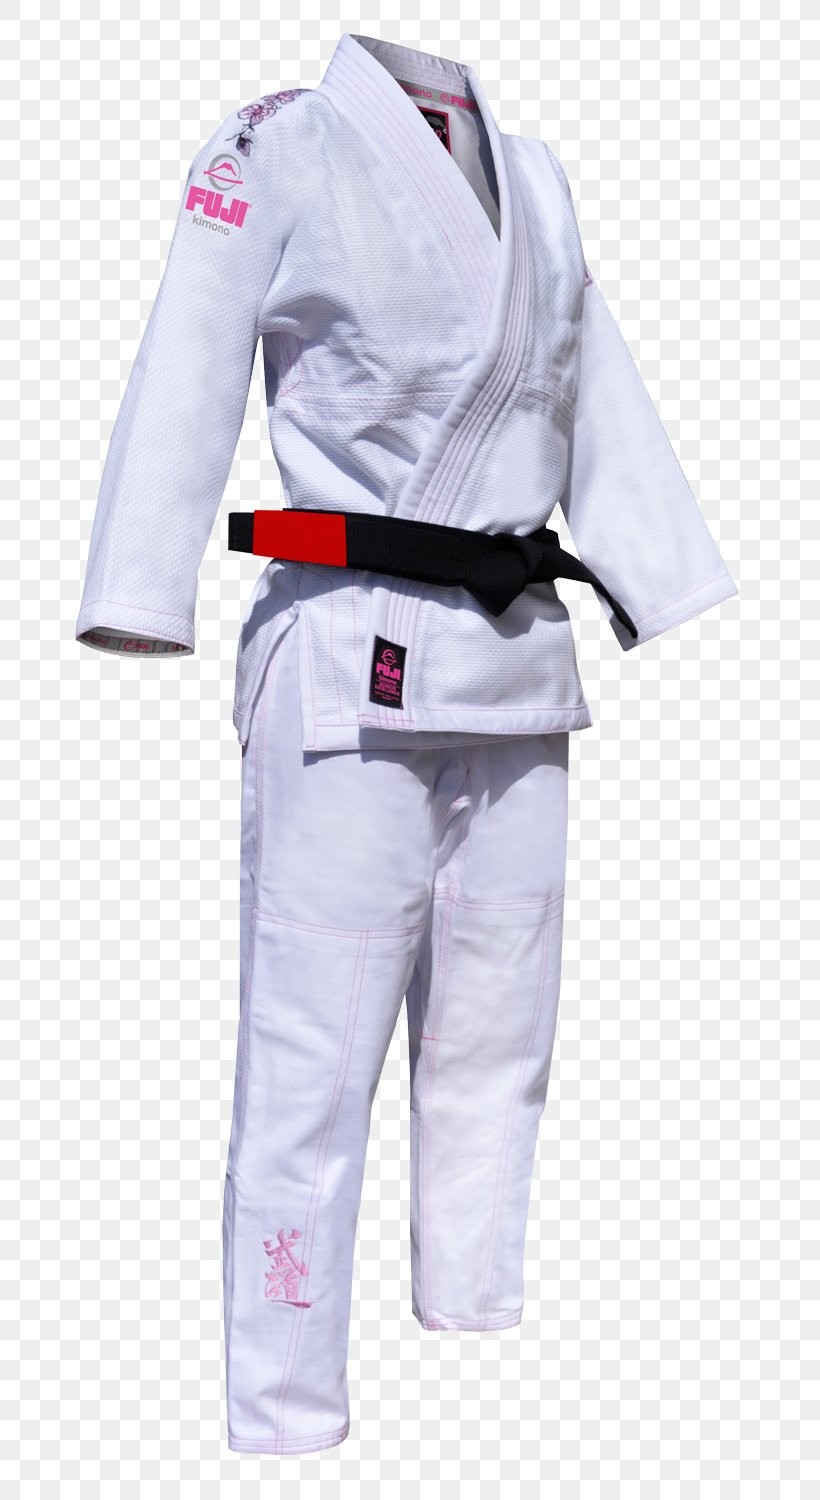 Brazilian Jiu-jitsu Gi Karate Gi Jujutsu Dobok, PNG, 717x1500px, Brazilian Jiujitsu Gi, Brazilian Jiujitsu, Brazilian Jiujitsu Ranking System, Clothing, Costume Download Free